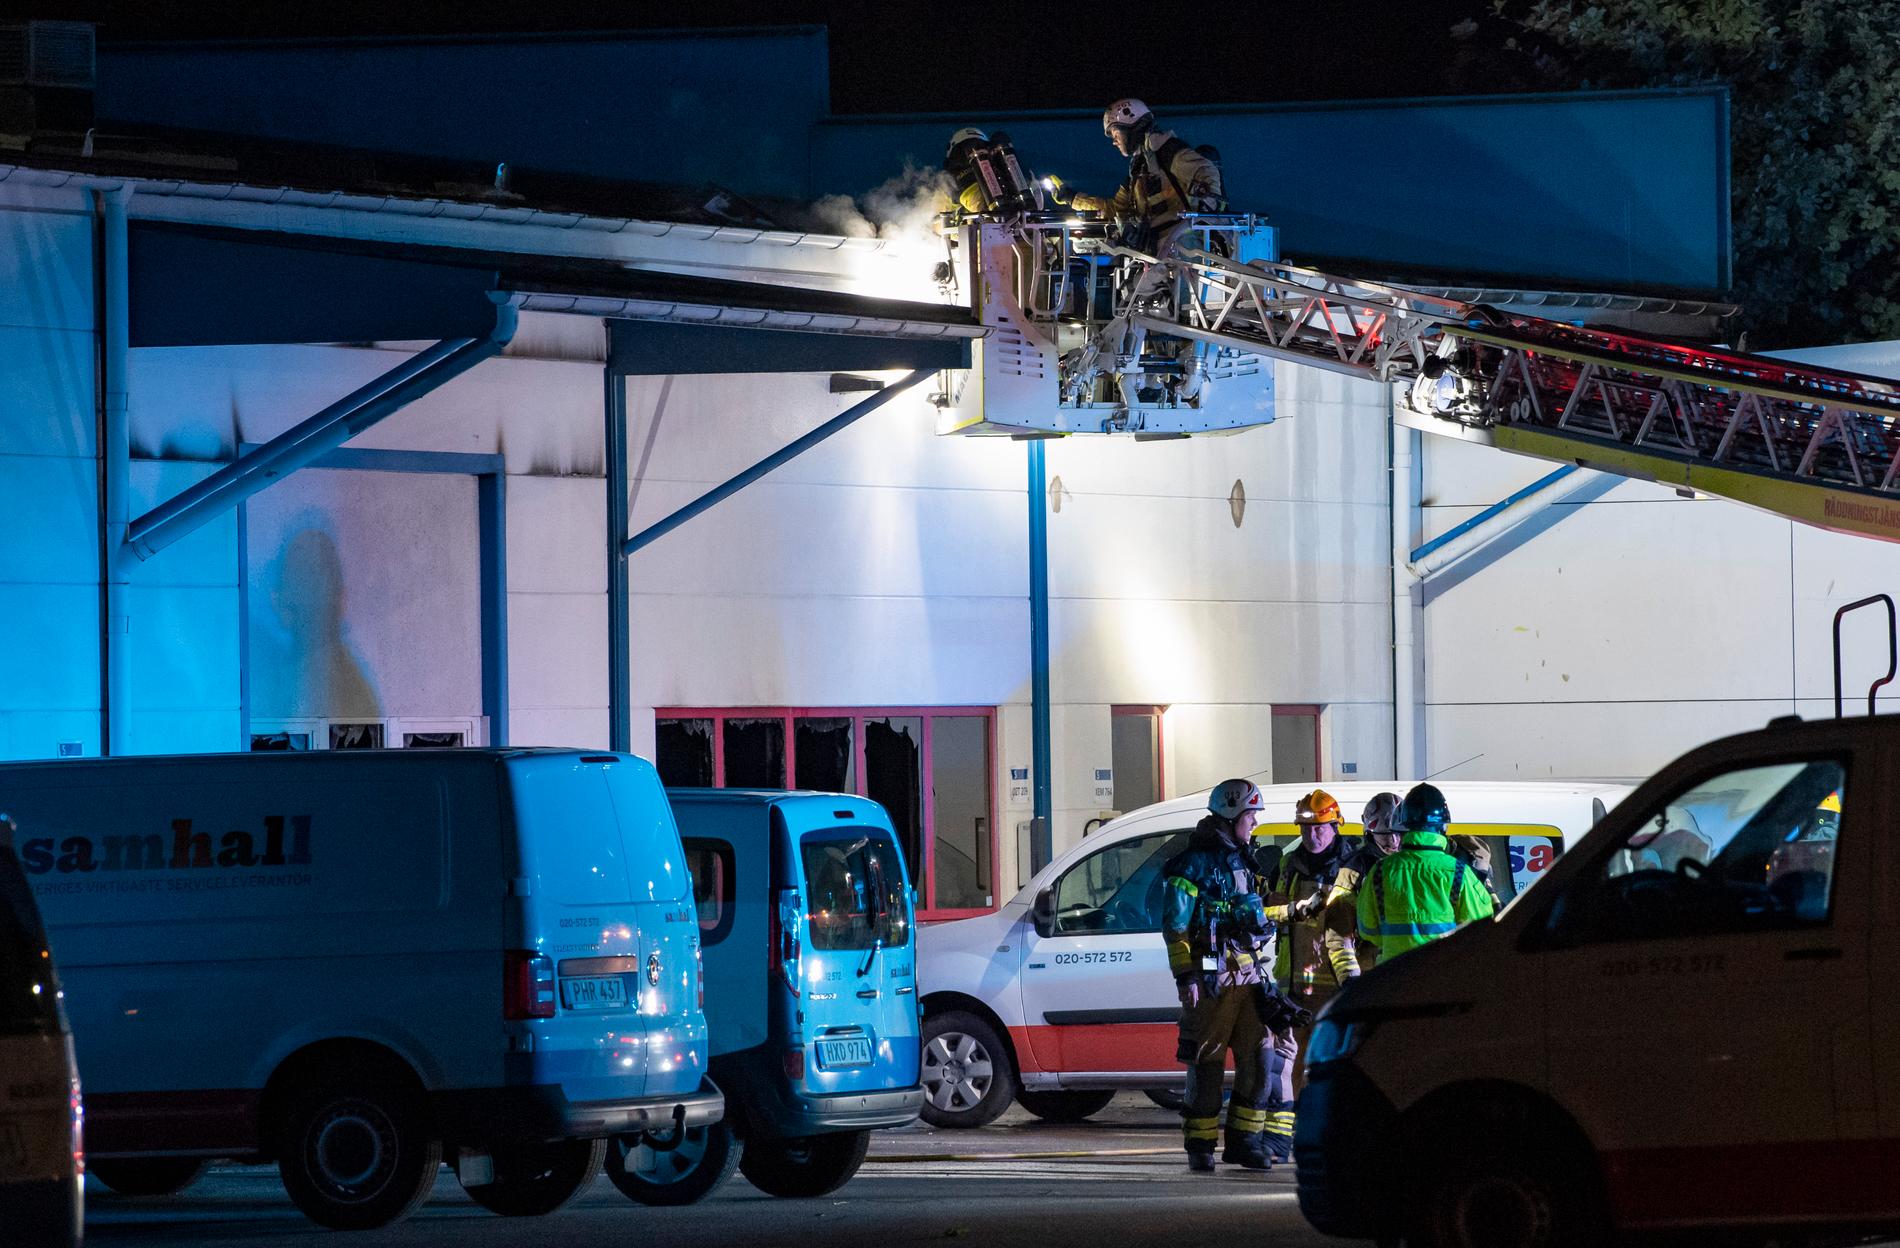 Räddningstjänsten arbetar med att släcka en brand i en industrilokal i Bulltofta i Malmö natten till onsdagen.